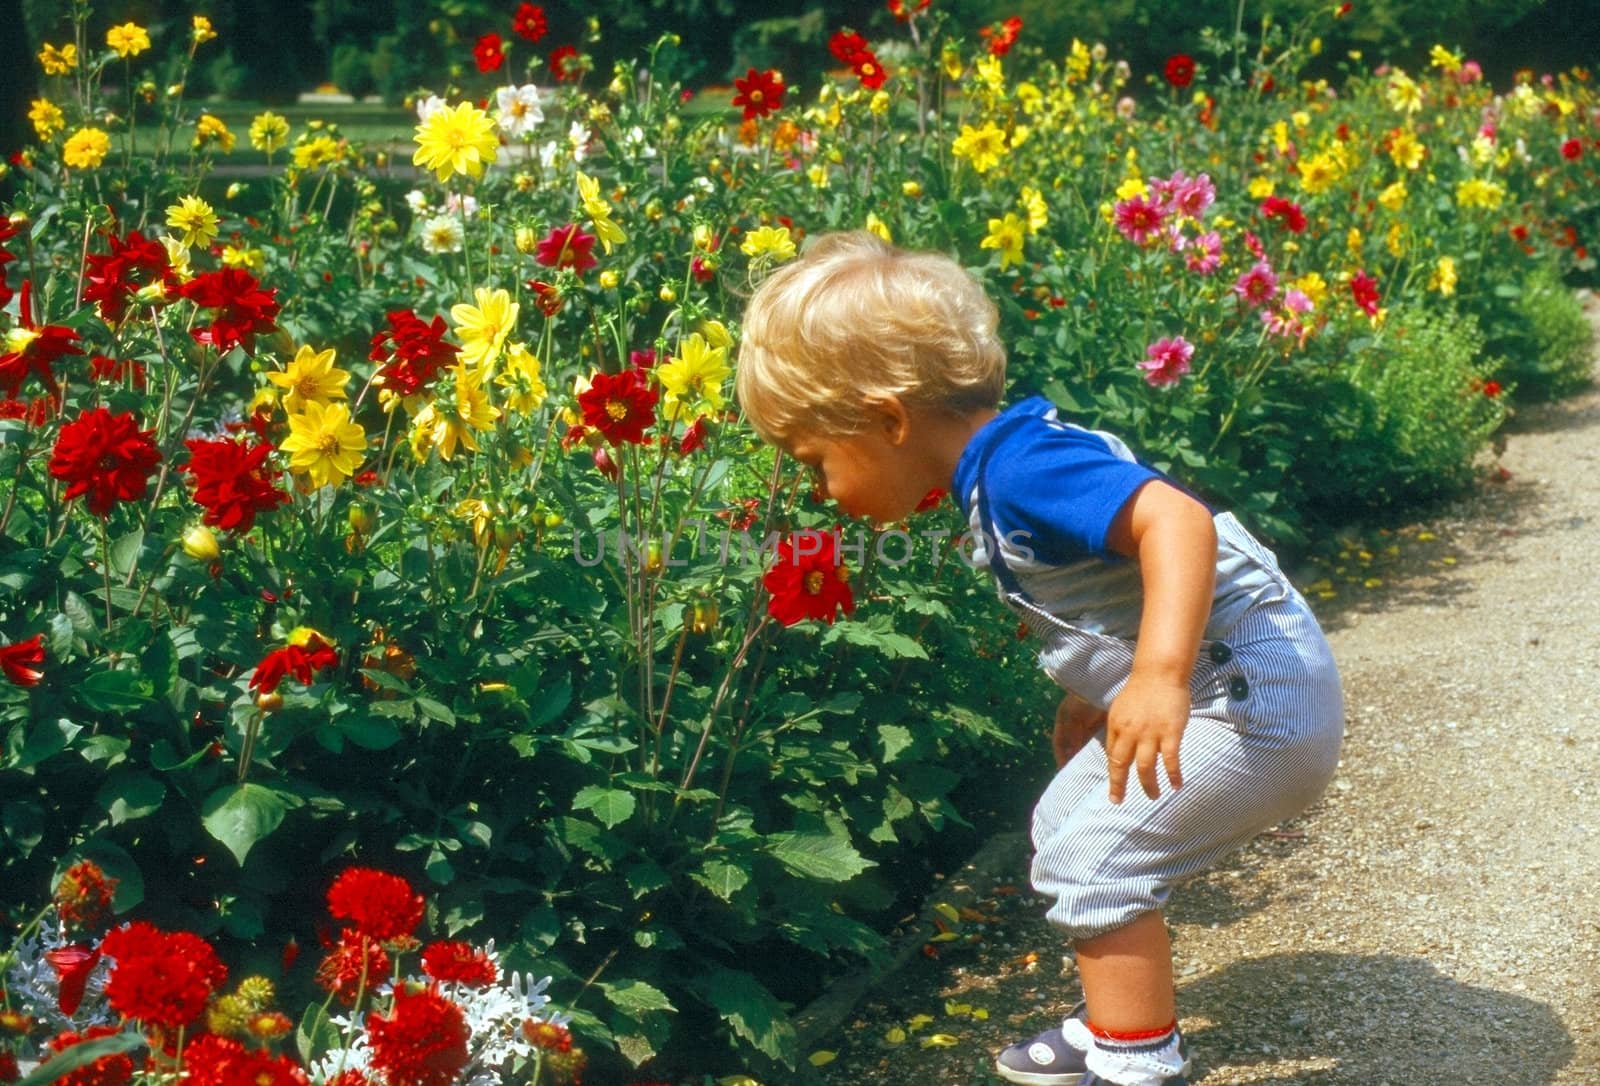 Little boy in garden by jol66